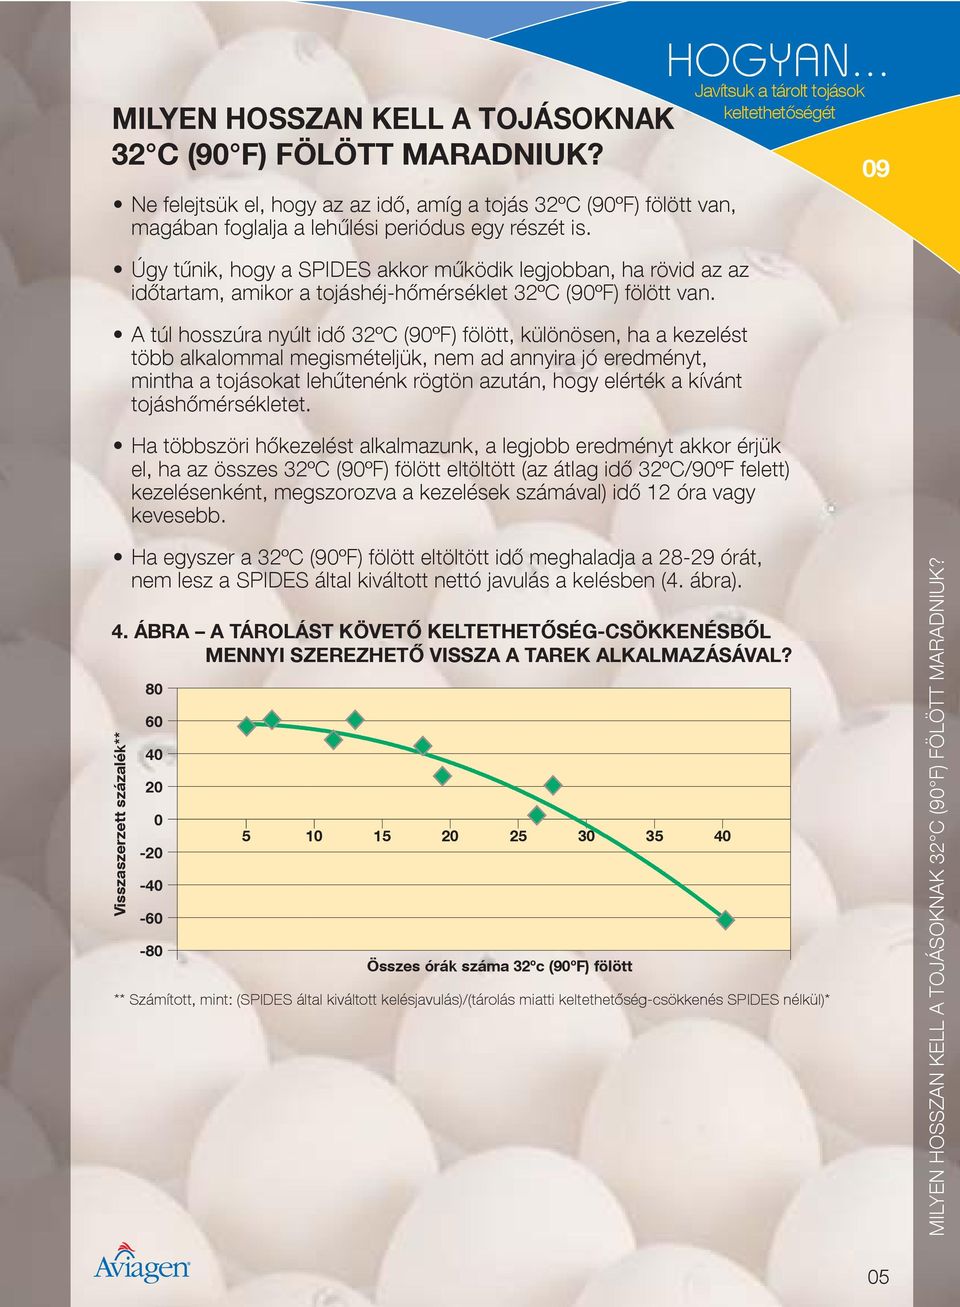 A túl hosszúra nyúlt id 32ºC (90ºF) fölött, különösen, ha a kezelést több alkalommal megismételjük, nem ad annyira jó eredményt, mintha a tojásokat leh tenénk rögtön azután, hogy elérték a kívánt